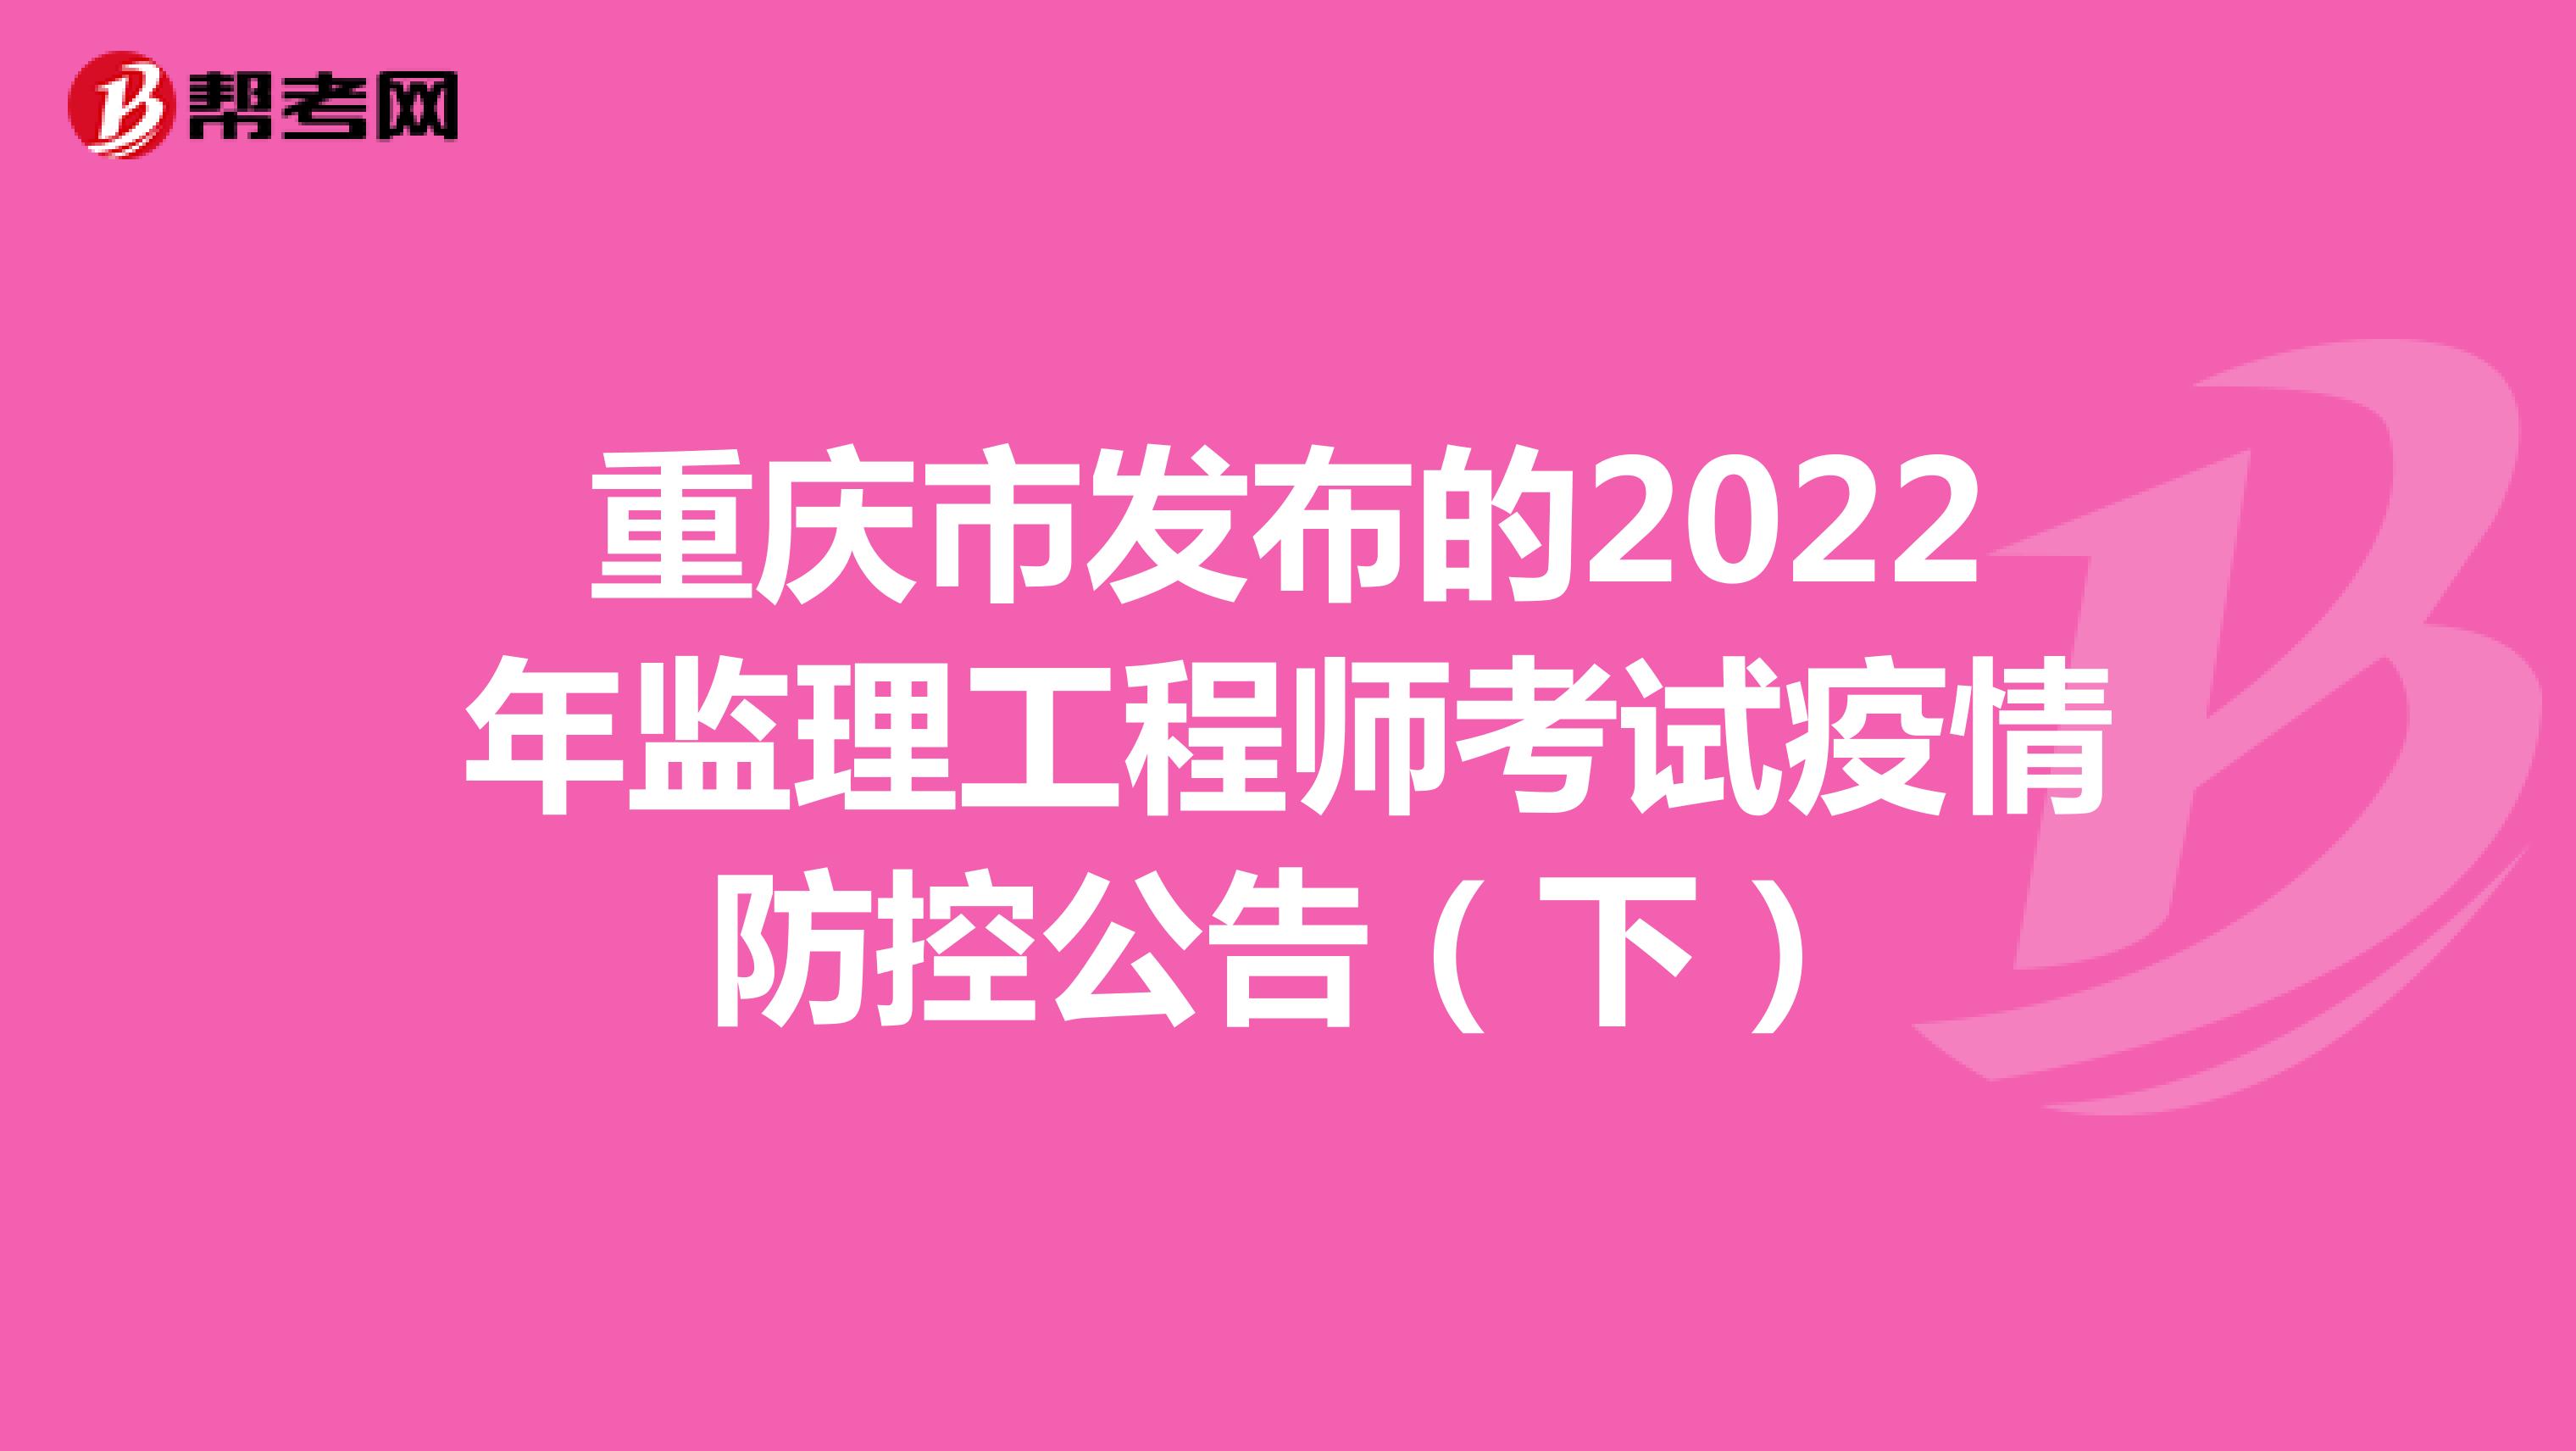 重庆市发布的2022年监理工程师考试疫情防控公告（下）